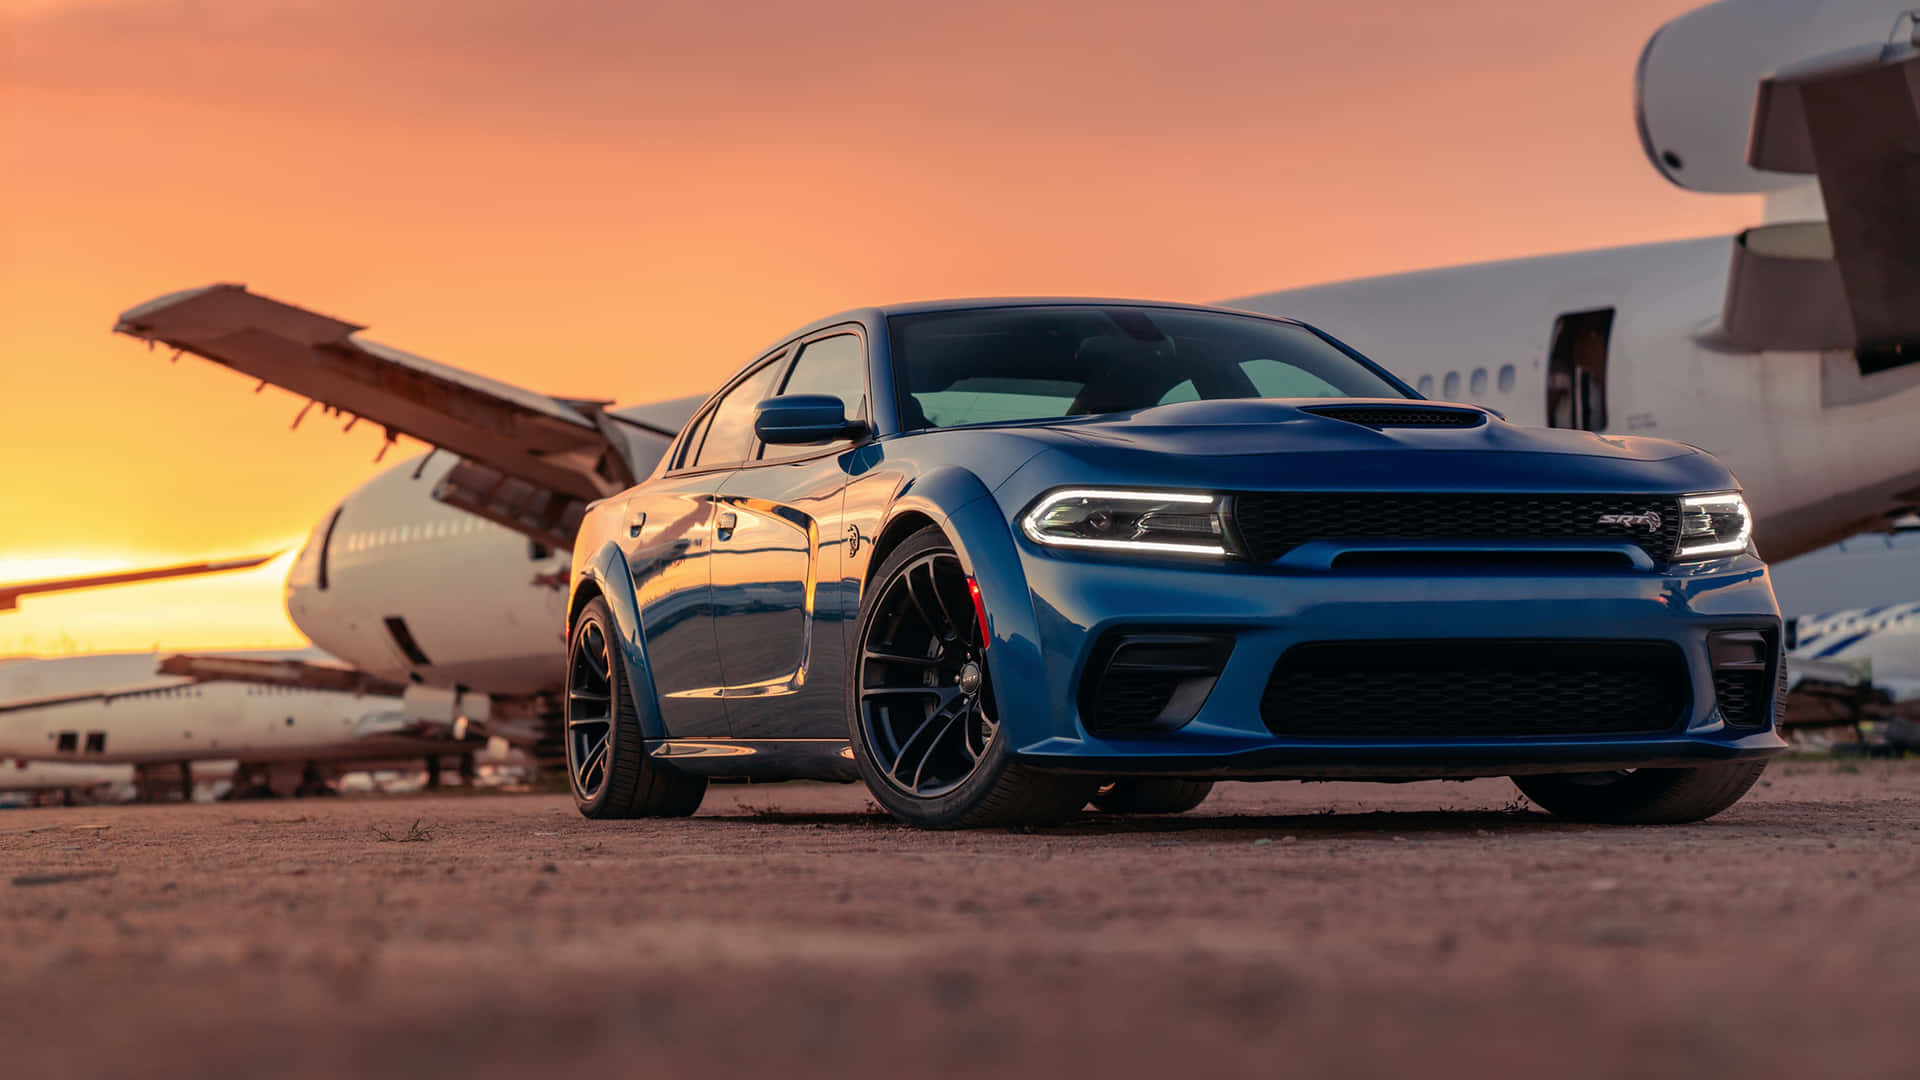 Den blå Dodge Charger parkeret foran et fly Wallpaper